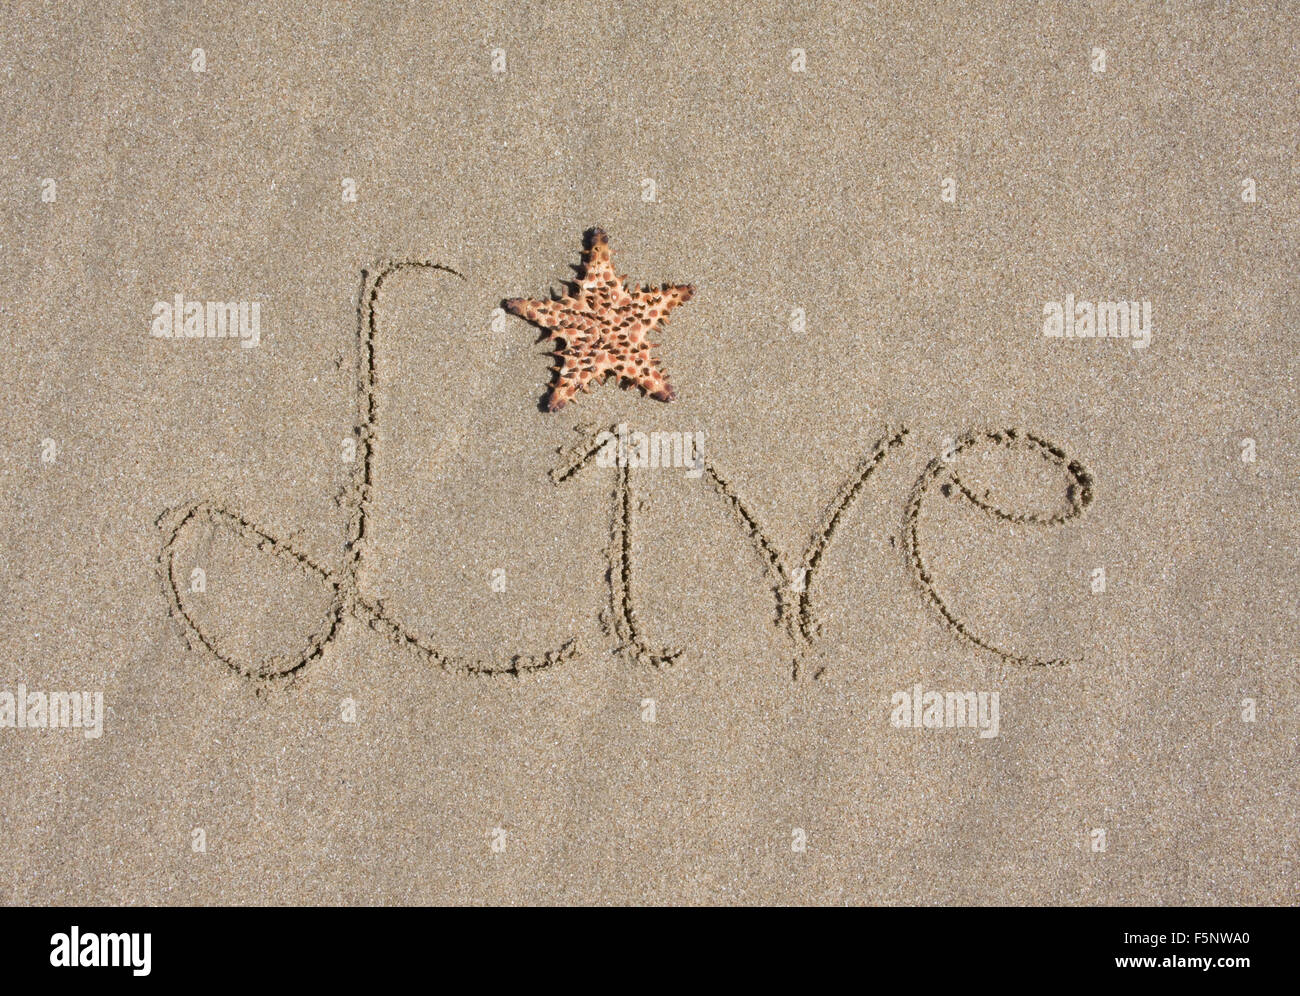 "Live" in Sand am Strand mit Seestern Punktierung das "i" geschrieben.  Finden Sie ähnliche Bilder in meinem Portfolio. Stockfoto